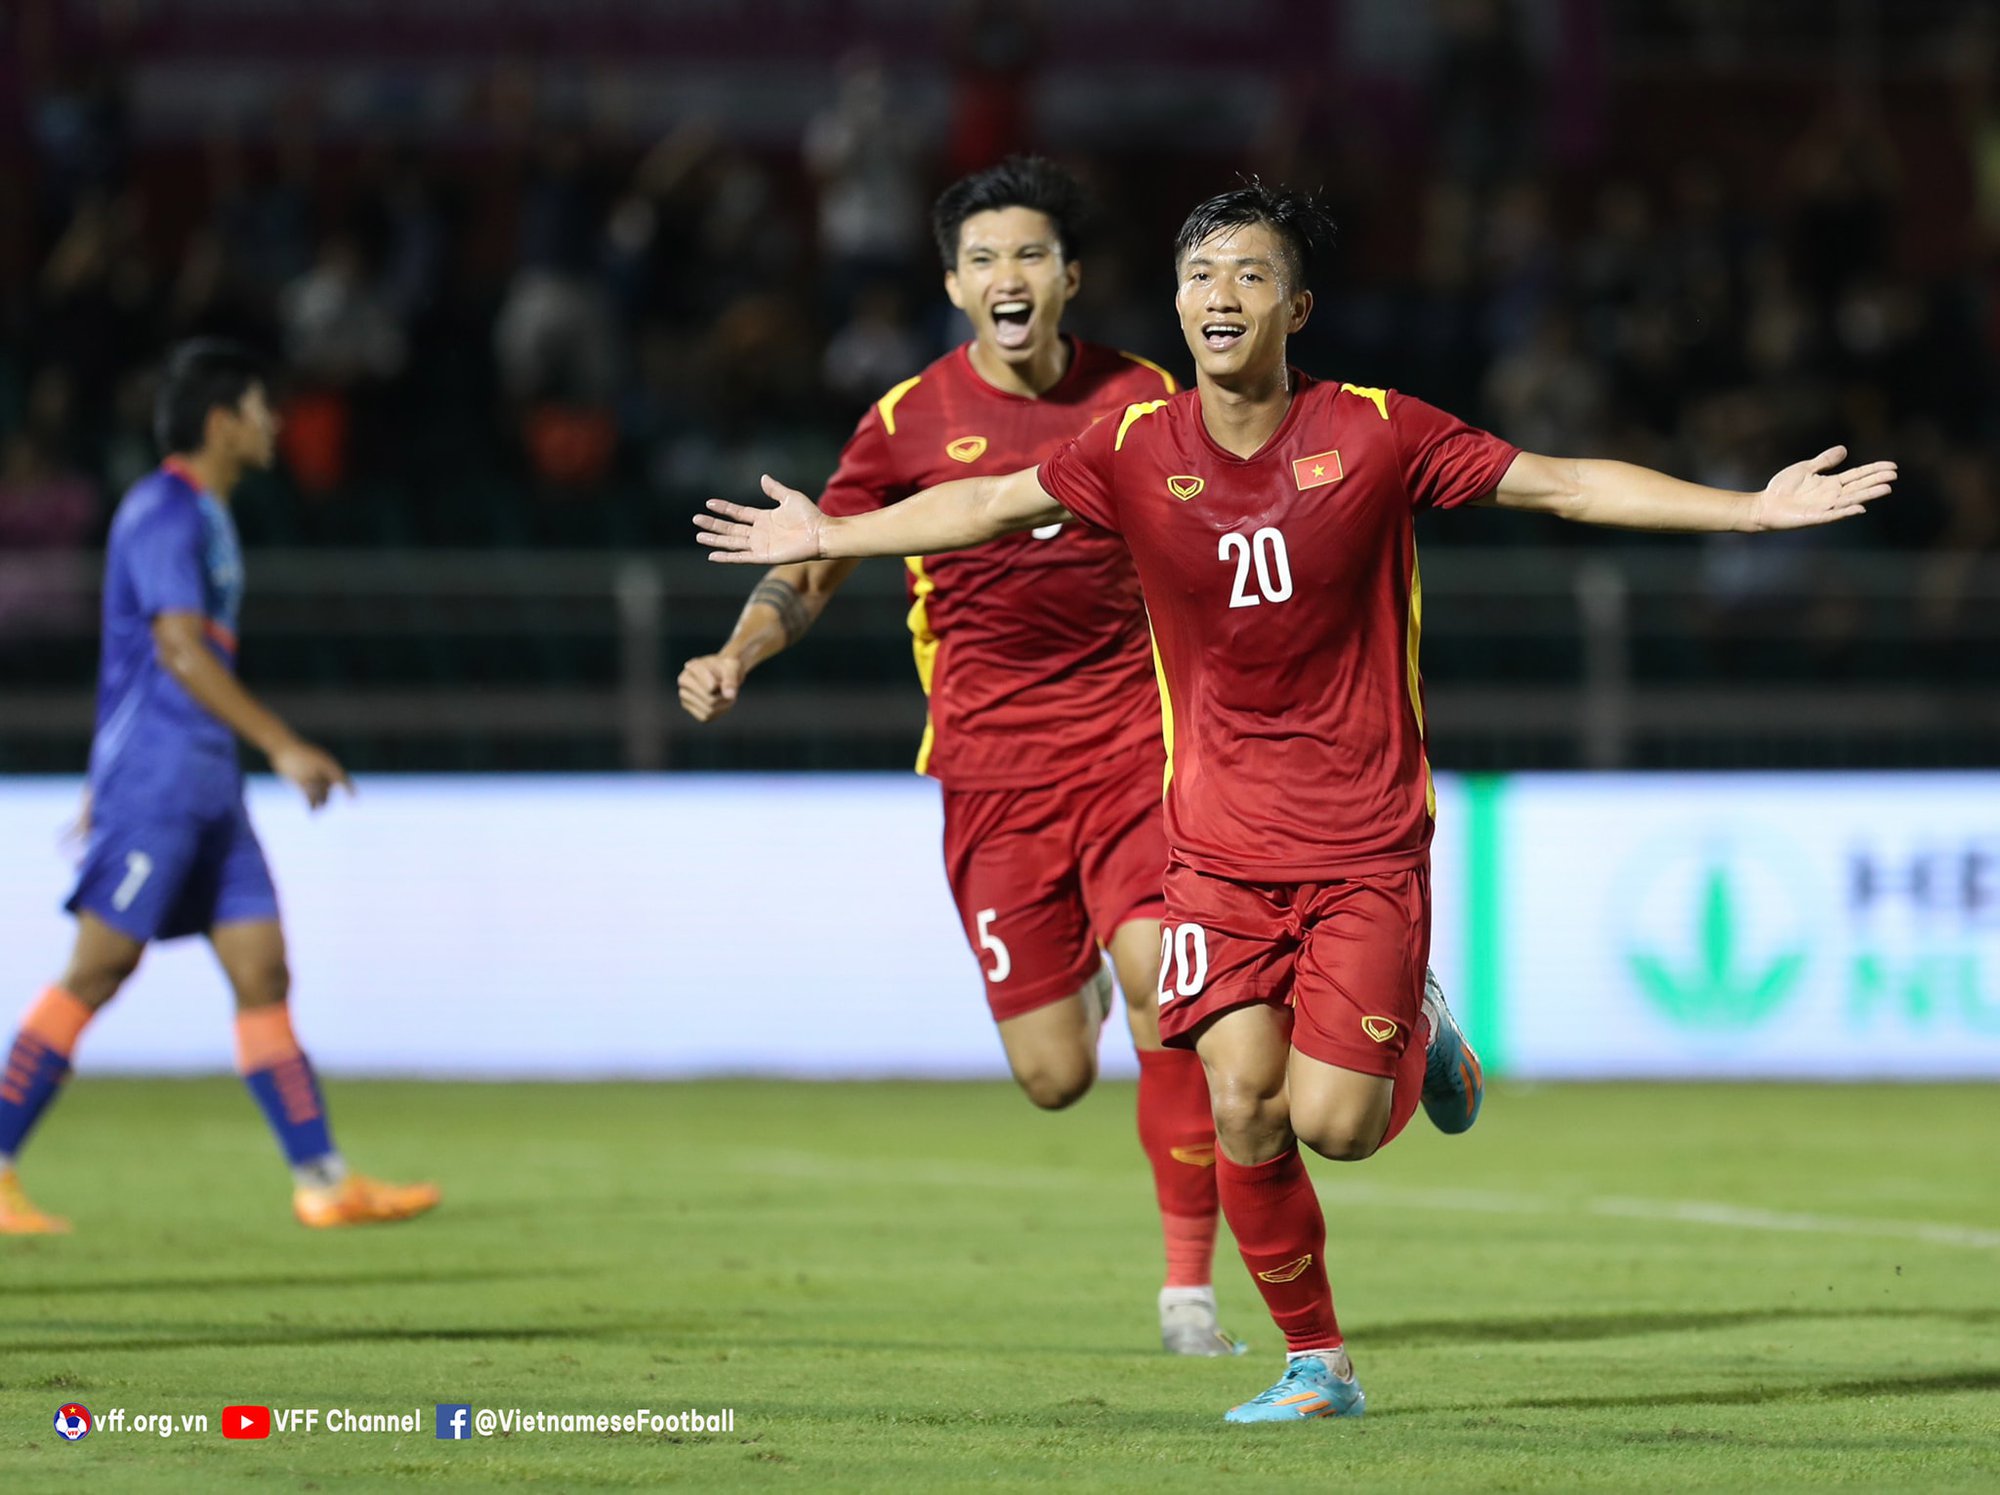 HLV Hoàng Văn Phúc chỉ ra điểm nhấn của ĐT Việt Nam sau trận thắng Ấn Độ - Ảnh 1.